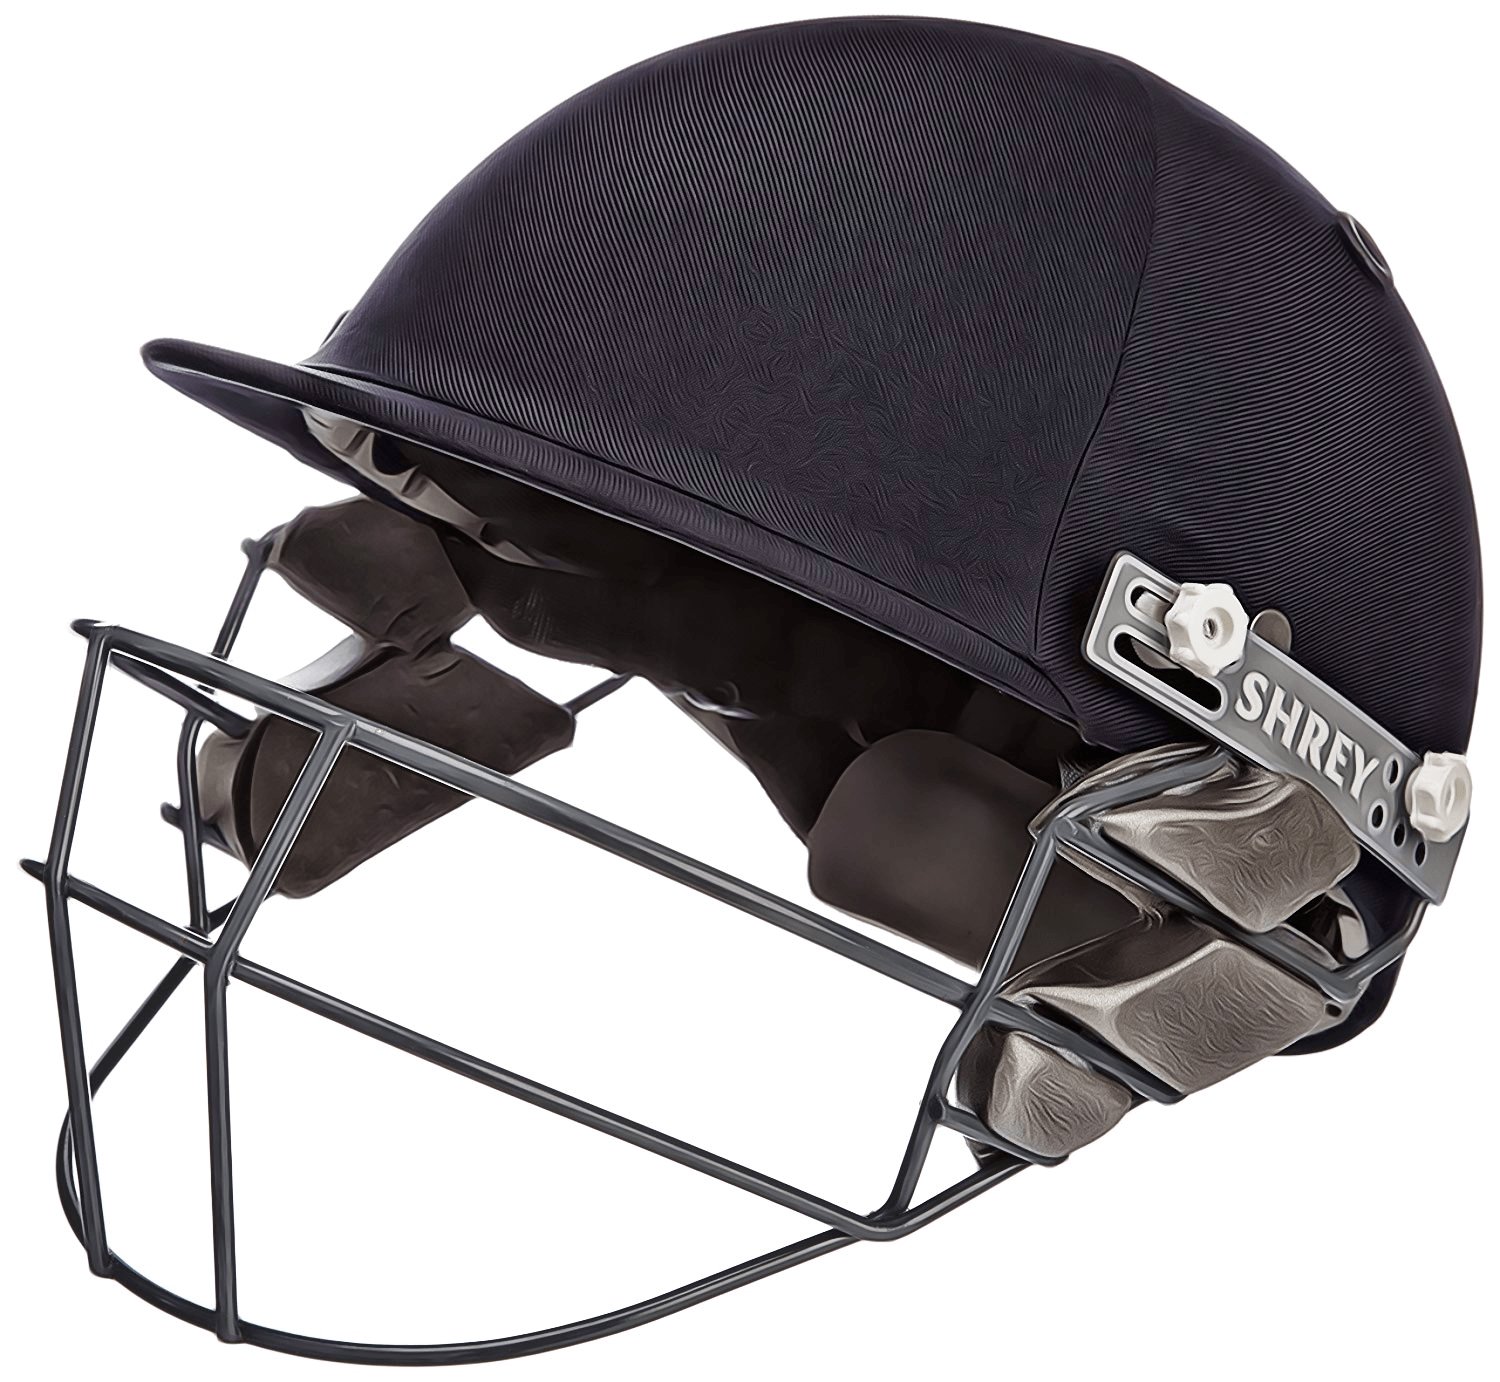 Shrey Premium with Mild Steel Visor Cricket Helmet